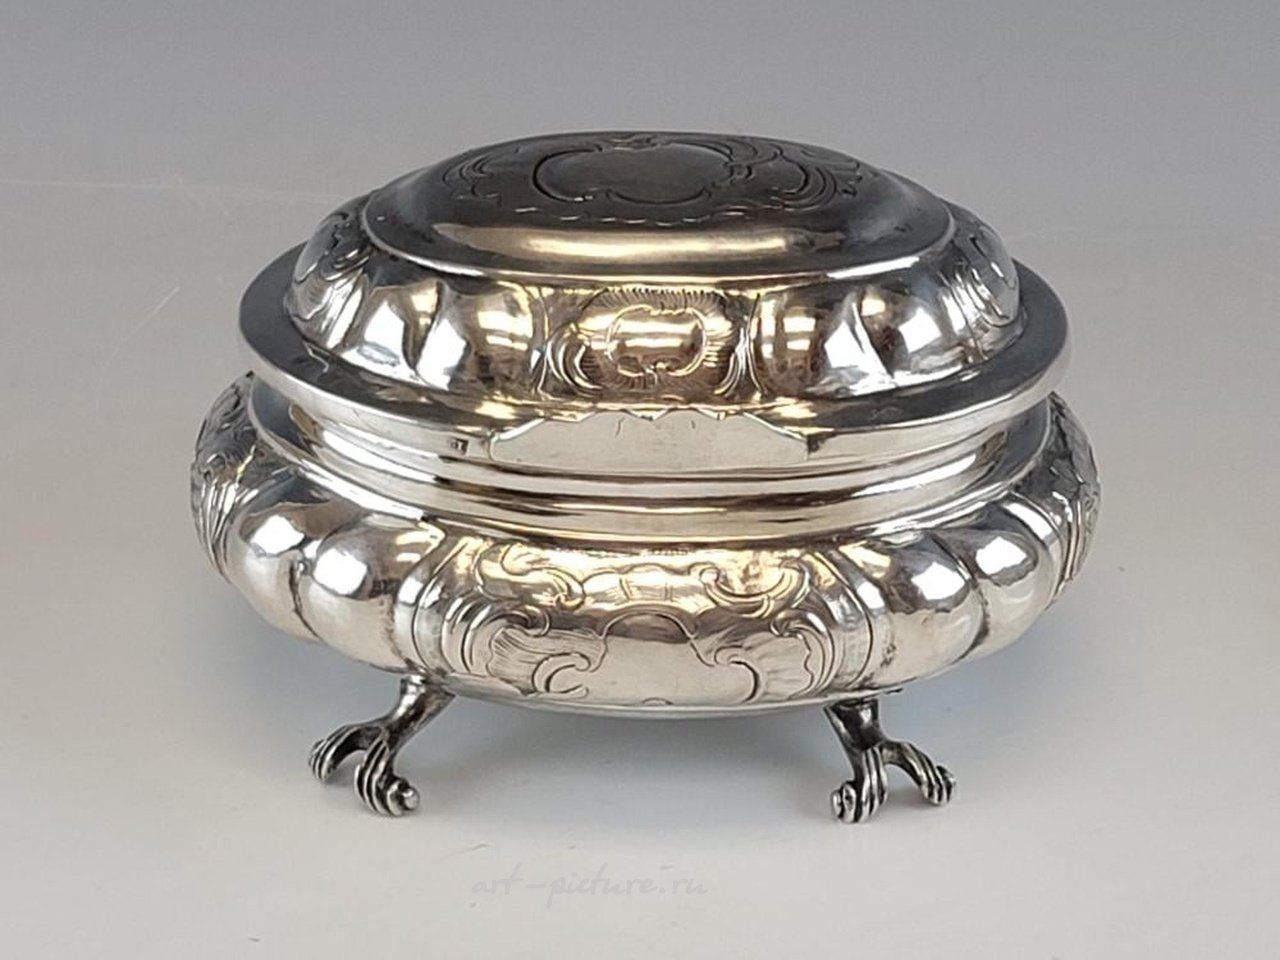 Русское серебро , Редкий антикварный русский серебряный ящик 18 века, 1766 год